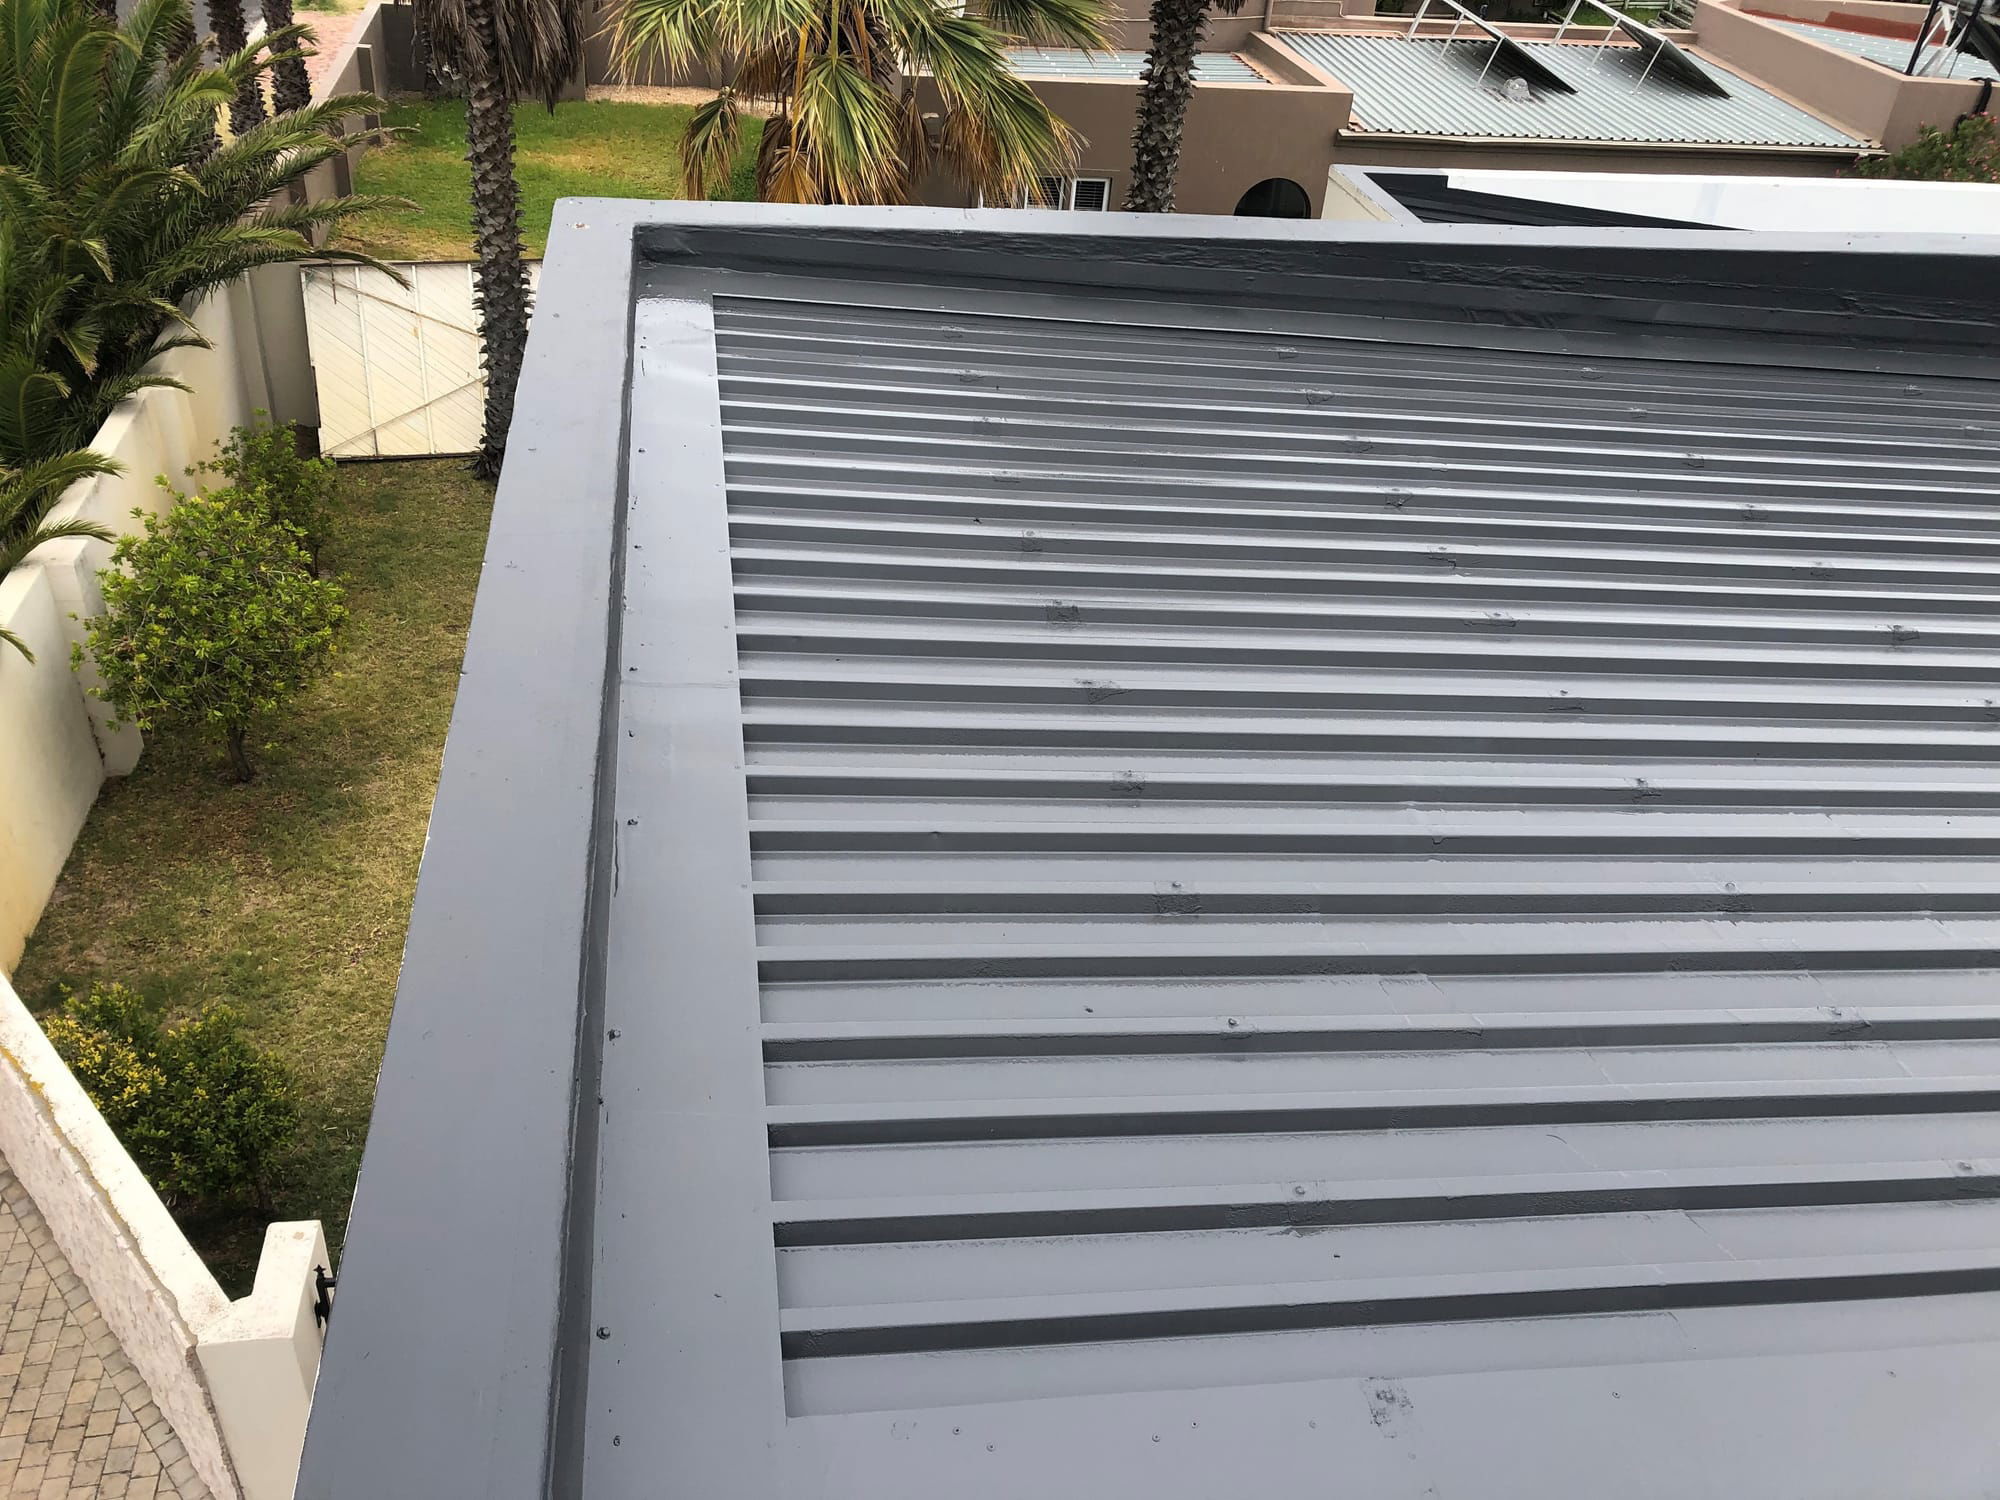 IBR Roof sheet Waterproofing